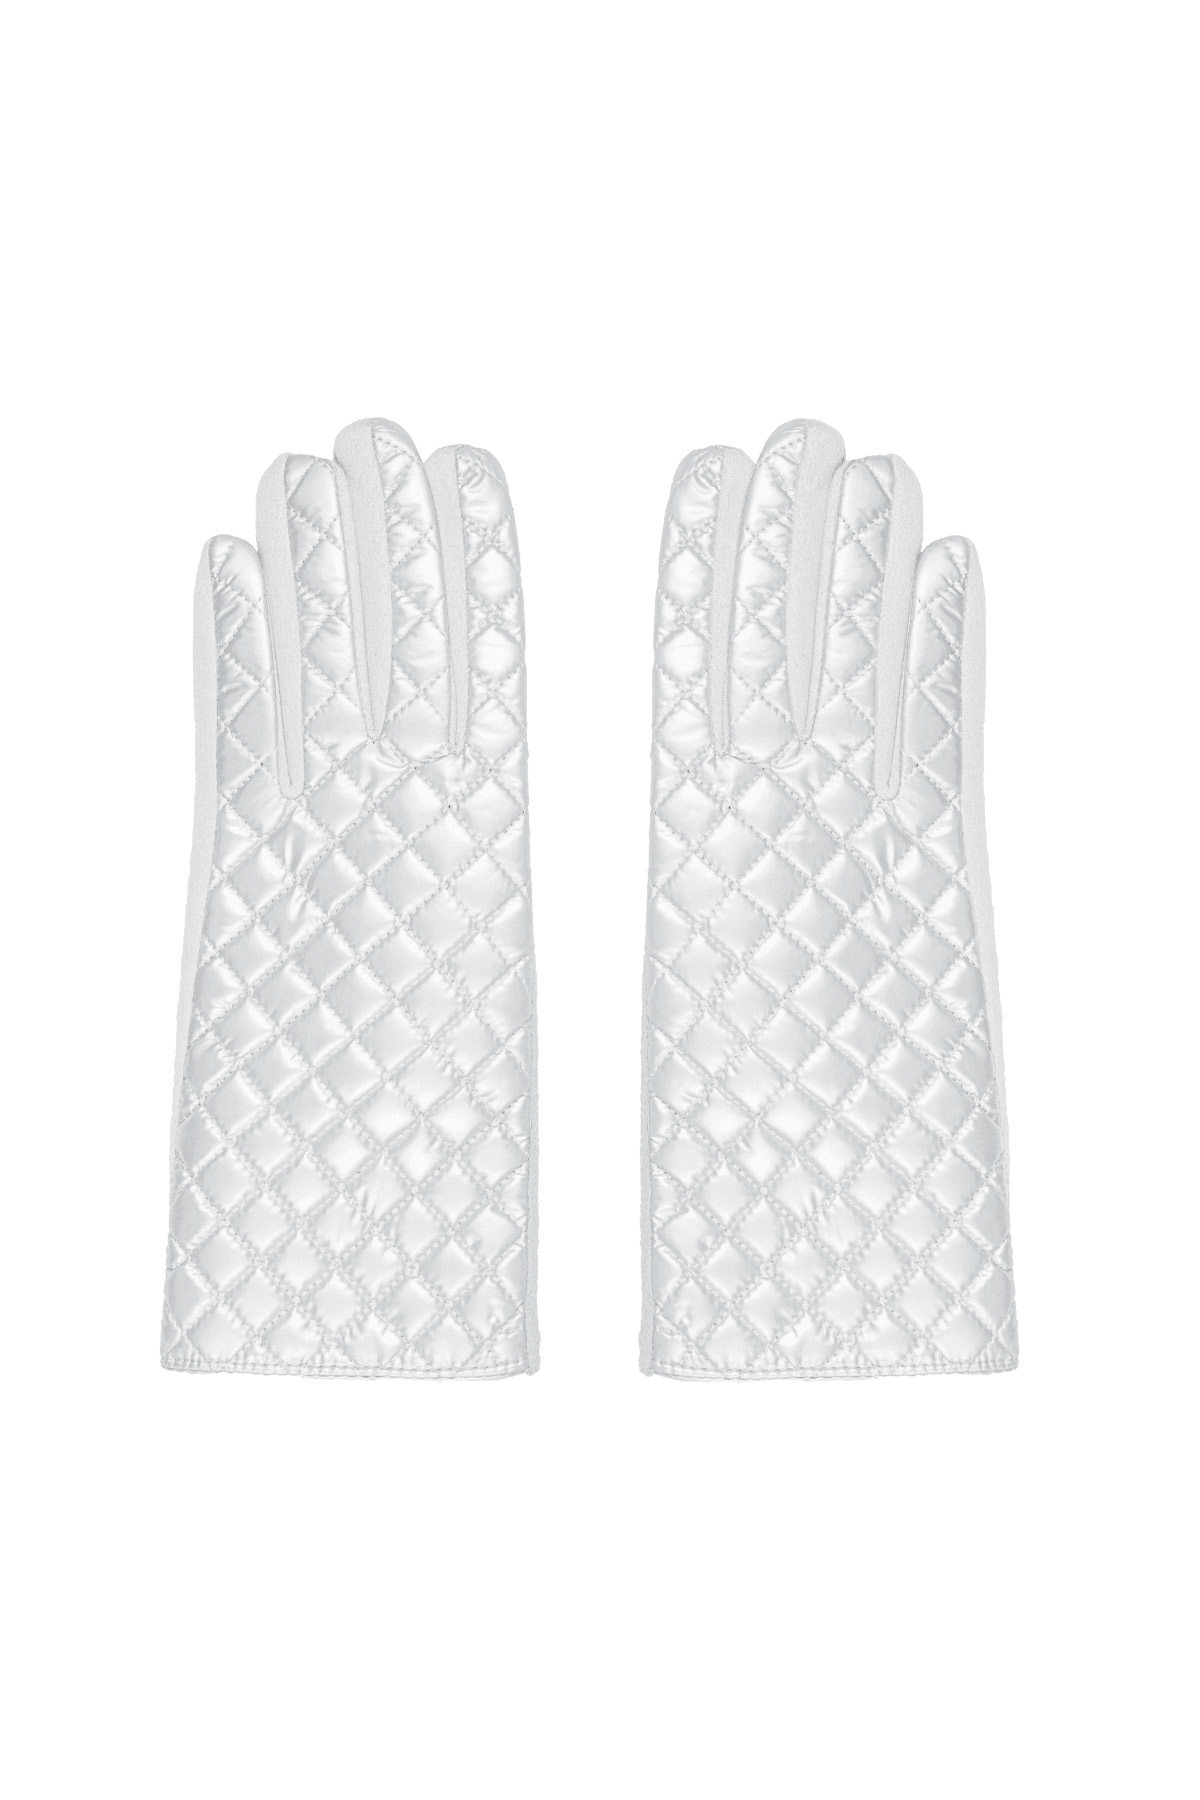 Handschuhe mit genähtem Muster - weiß h5 